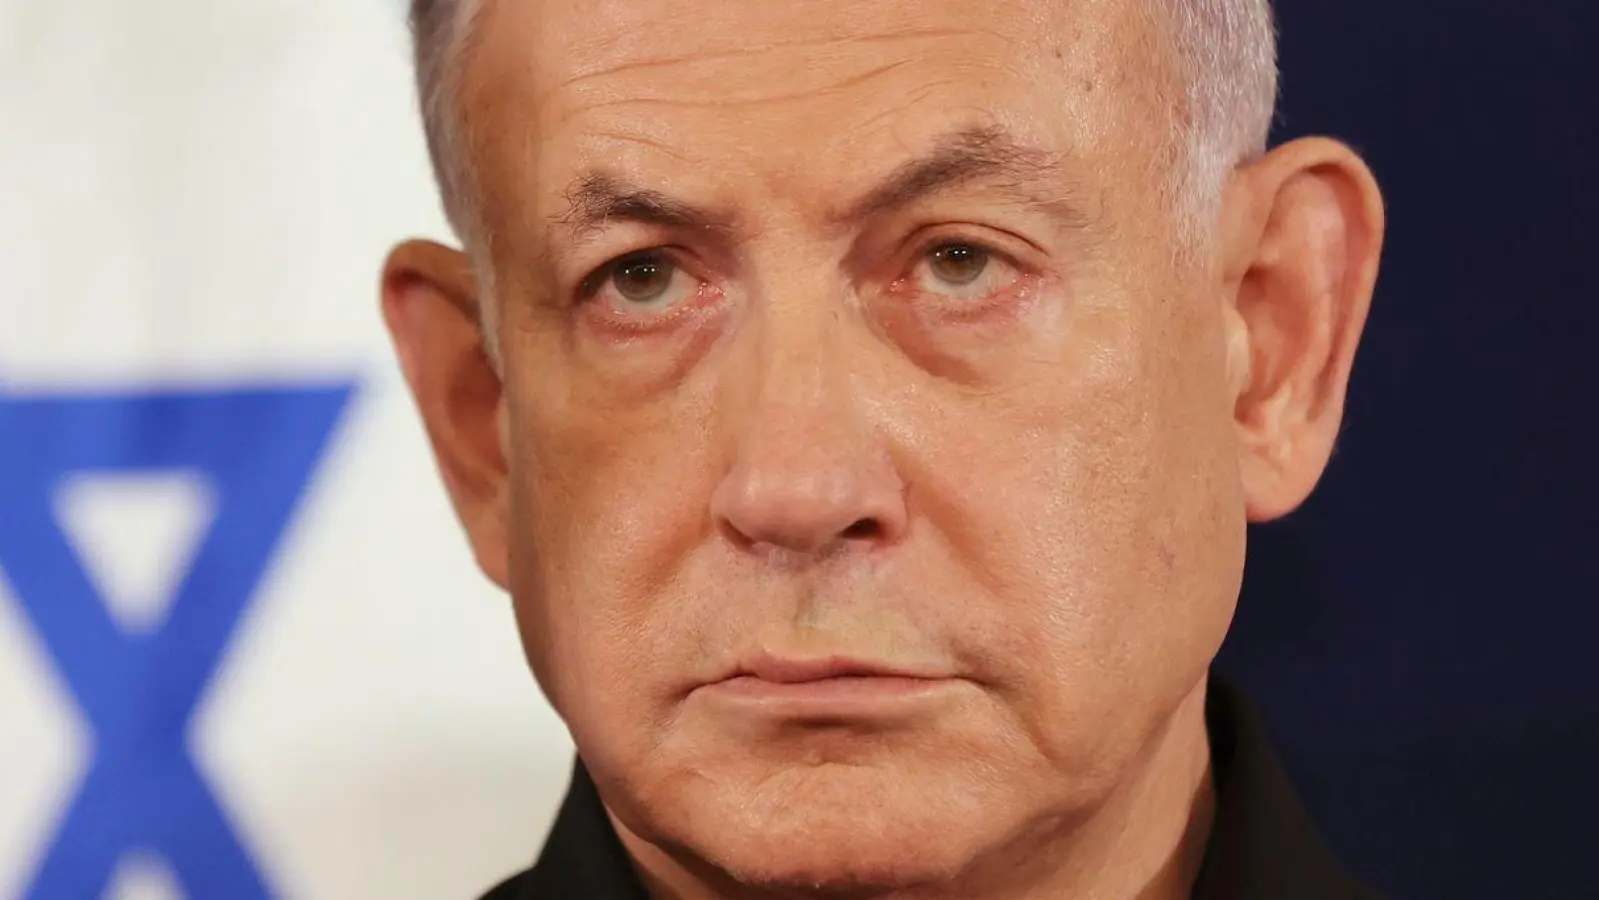 Benjamin Netanjahu, Ministerpräsident antwortet auf die Frage, ob er nach Ende der intensiven Kampfphase bereit sei, mit der Hamas eine Vereinbarung zu treffen, die eine Verpflichtung zur Beendigung des Krieges darstellen würde, mit Nein. (Foto: Abir Sultan/Pool European Pressphoto Agency/AP/dpa)